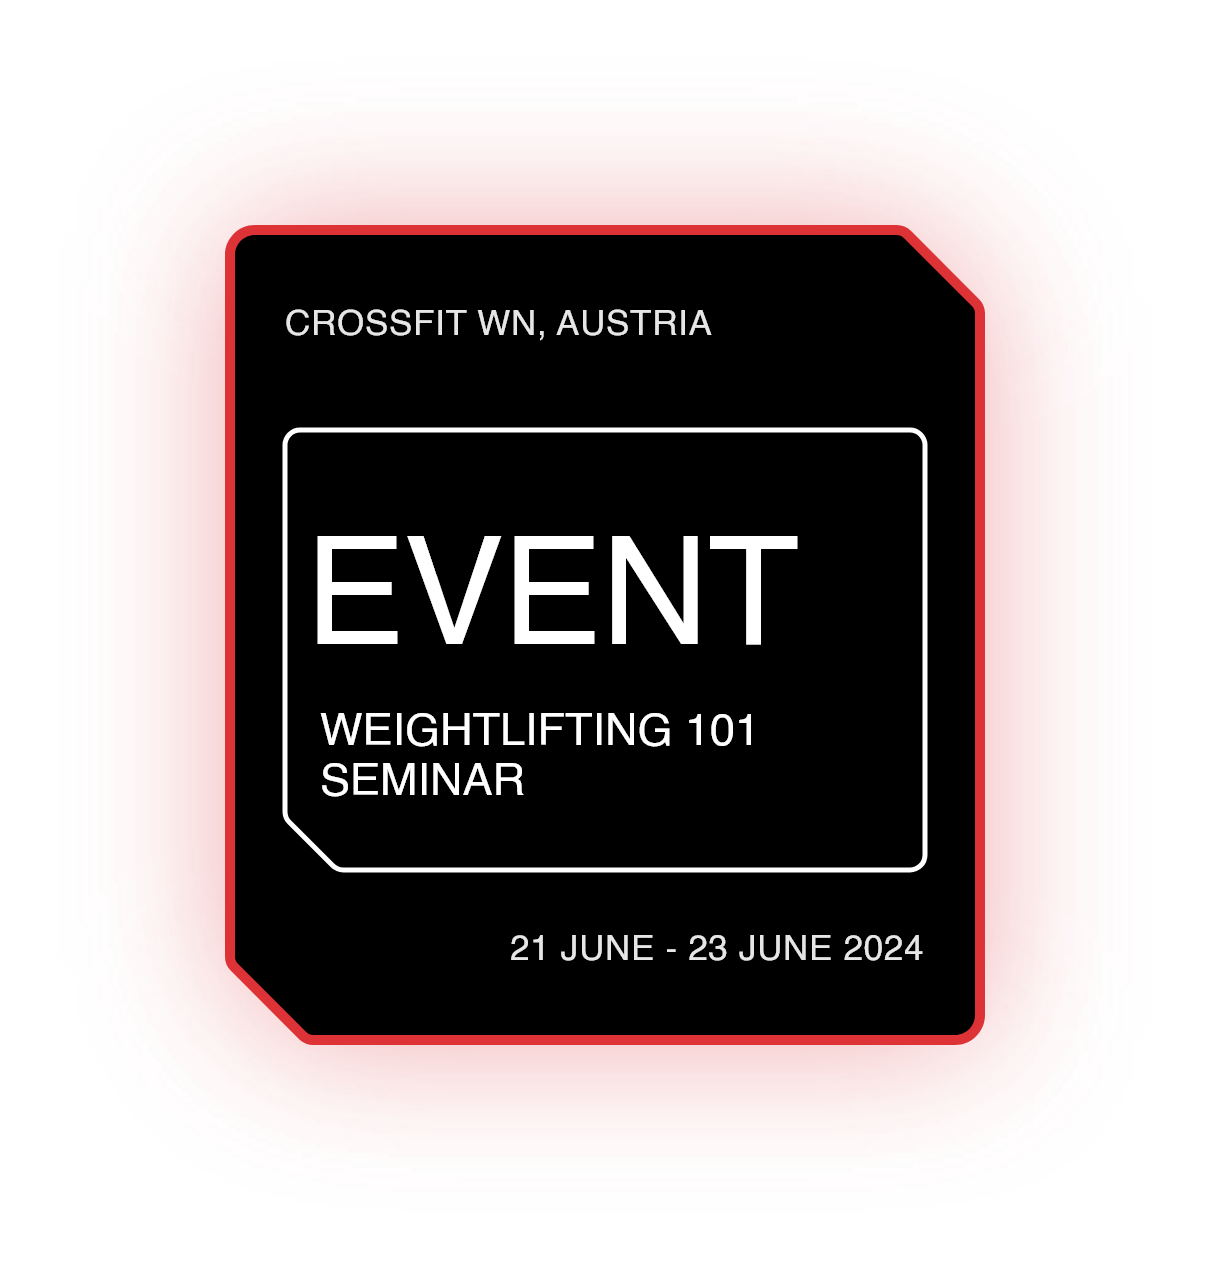 Weightlifting 101 Seminar - Wiener Neustadt, Austria